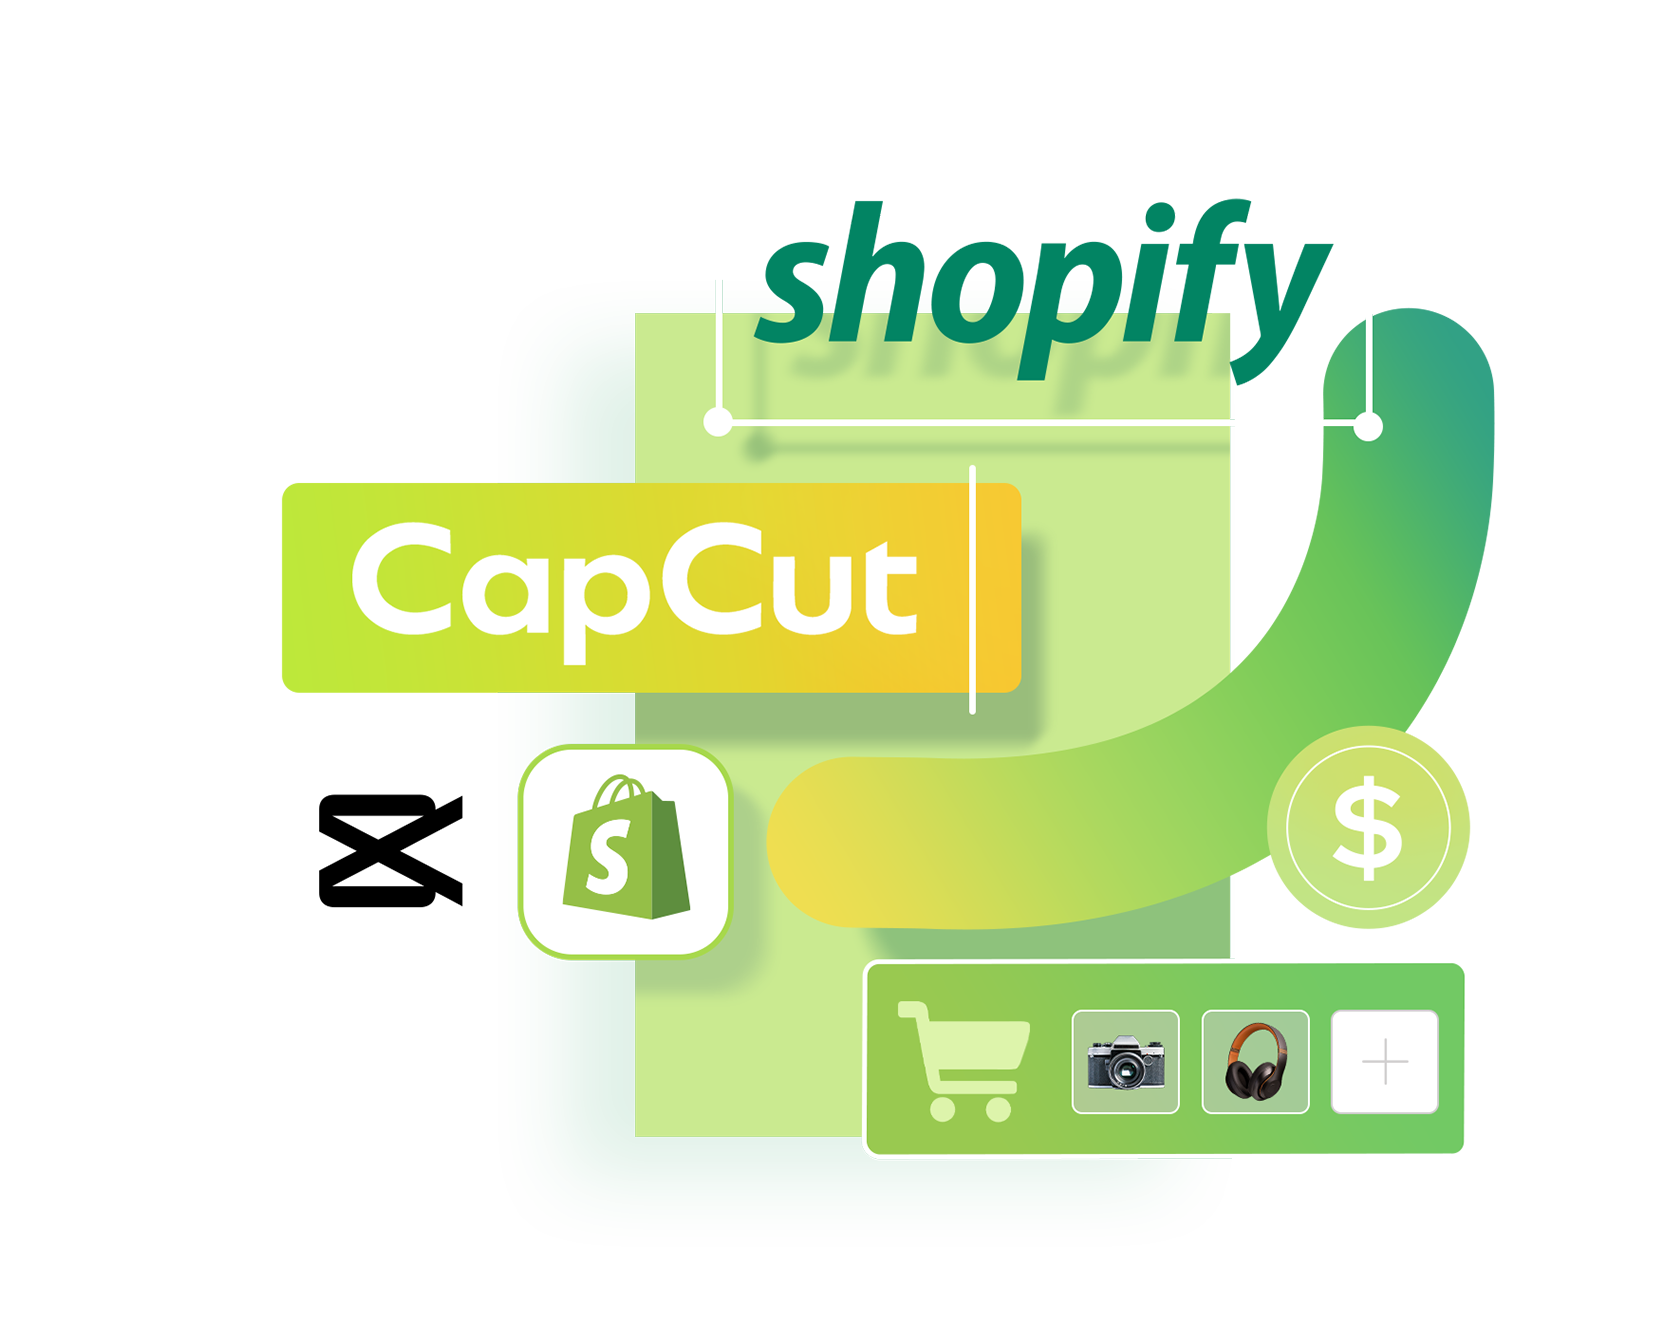 CapCut Bekerjasama dengan Shopify